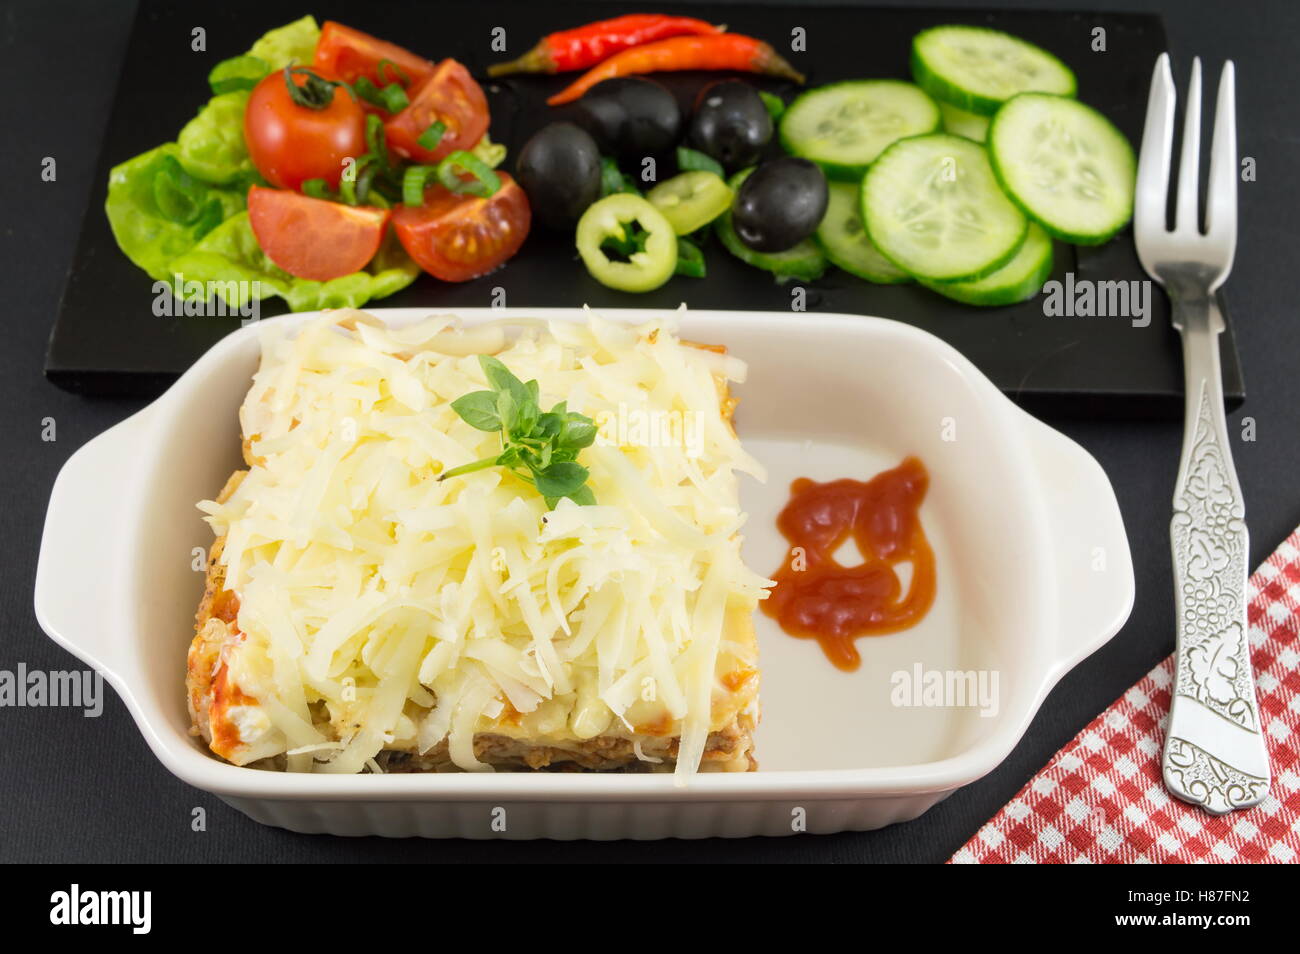 Porzione di lasagne con verdure fresche su una piastra Foto Stock